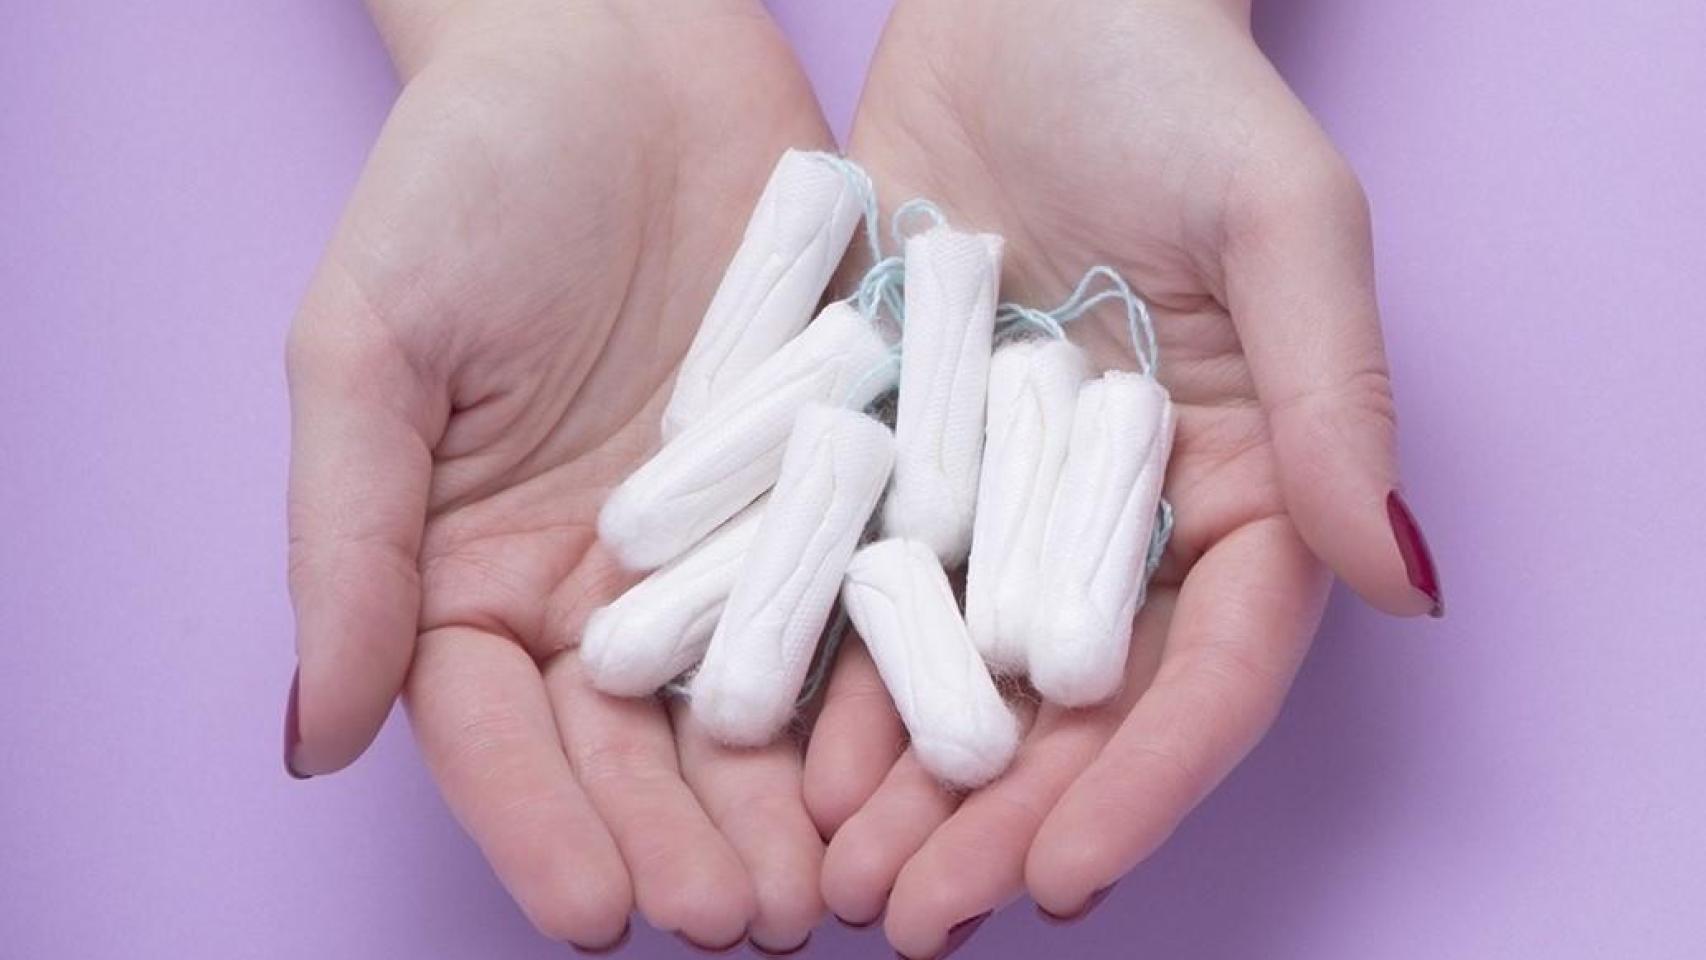 En España y Francia se estima que casi la mitad de las personas que menstrúan usan tampones.